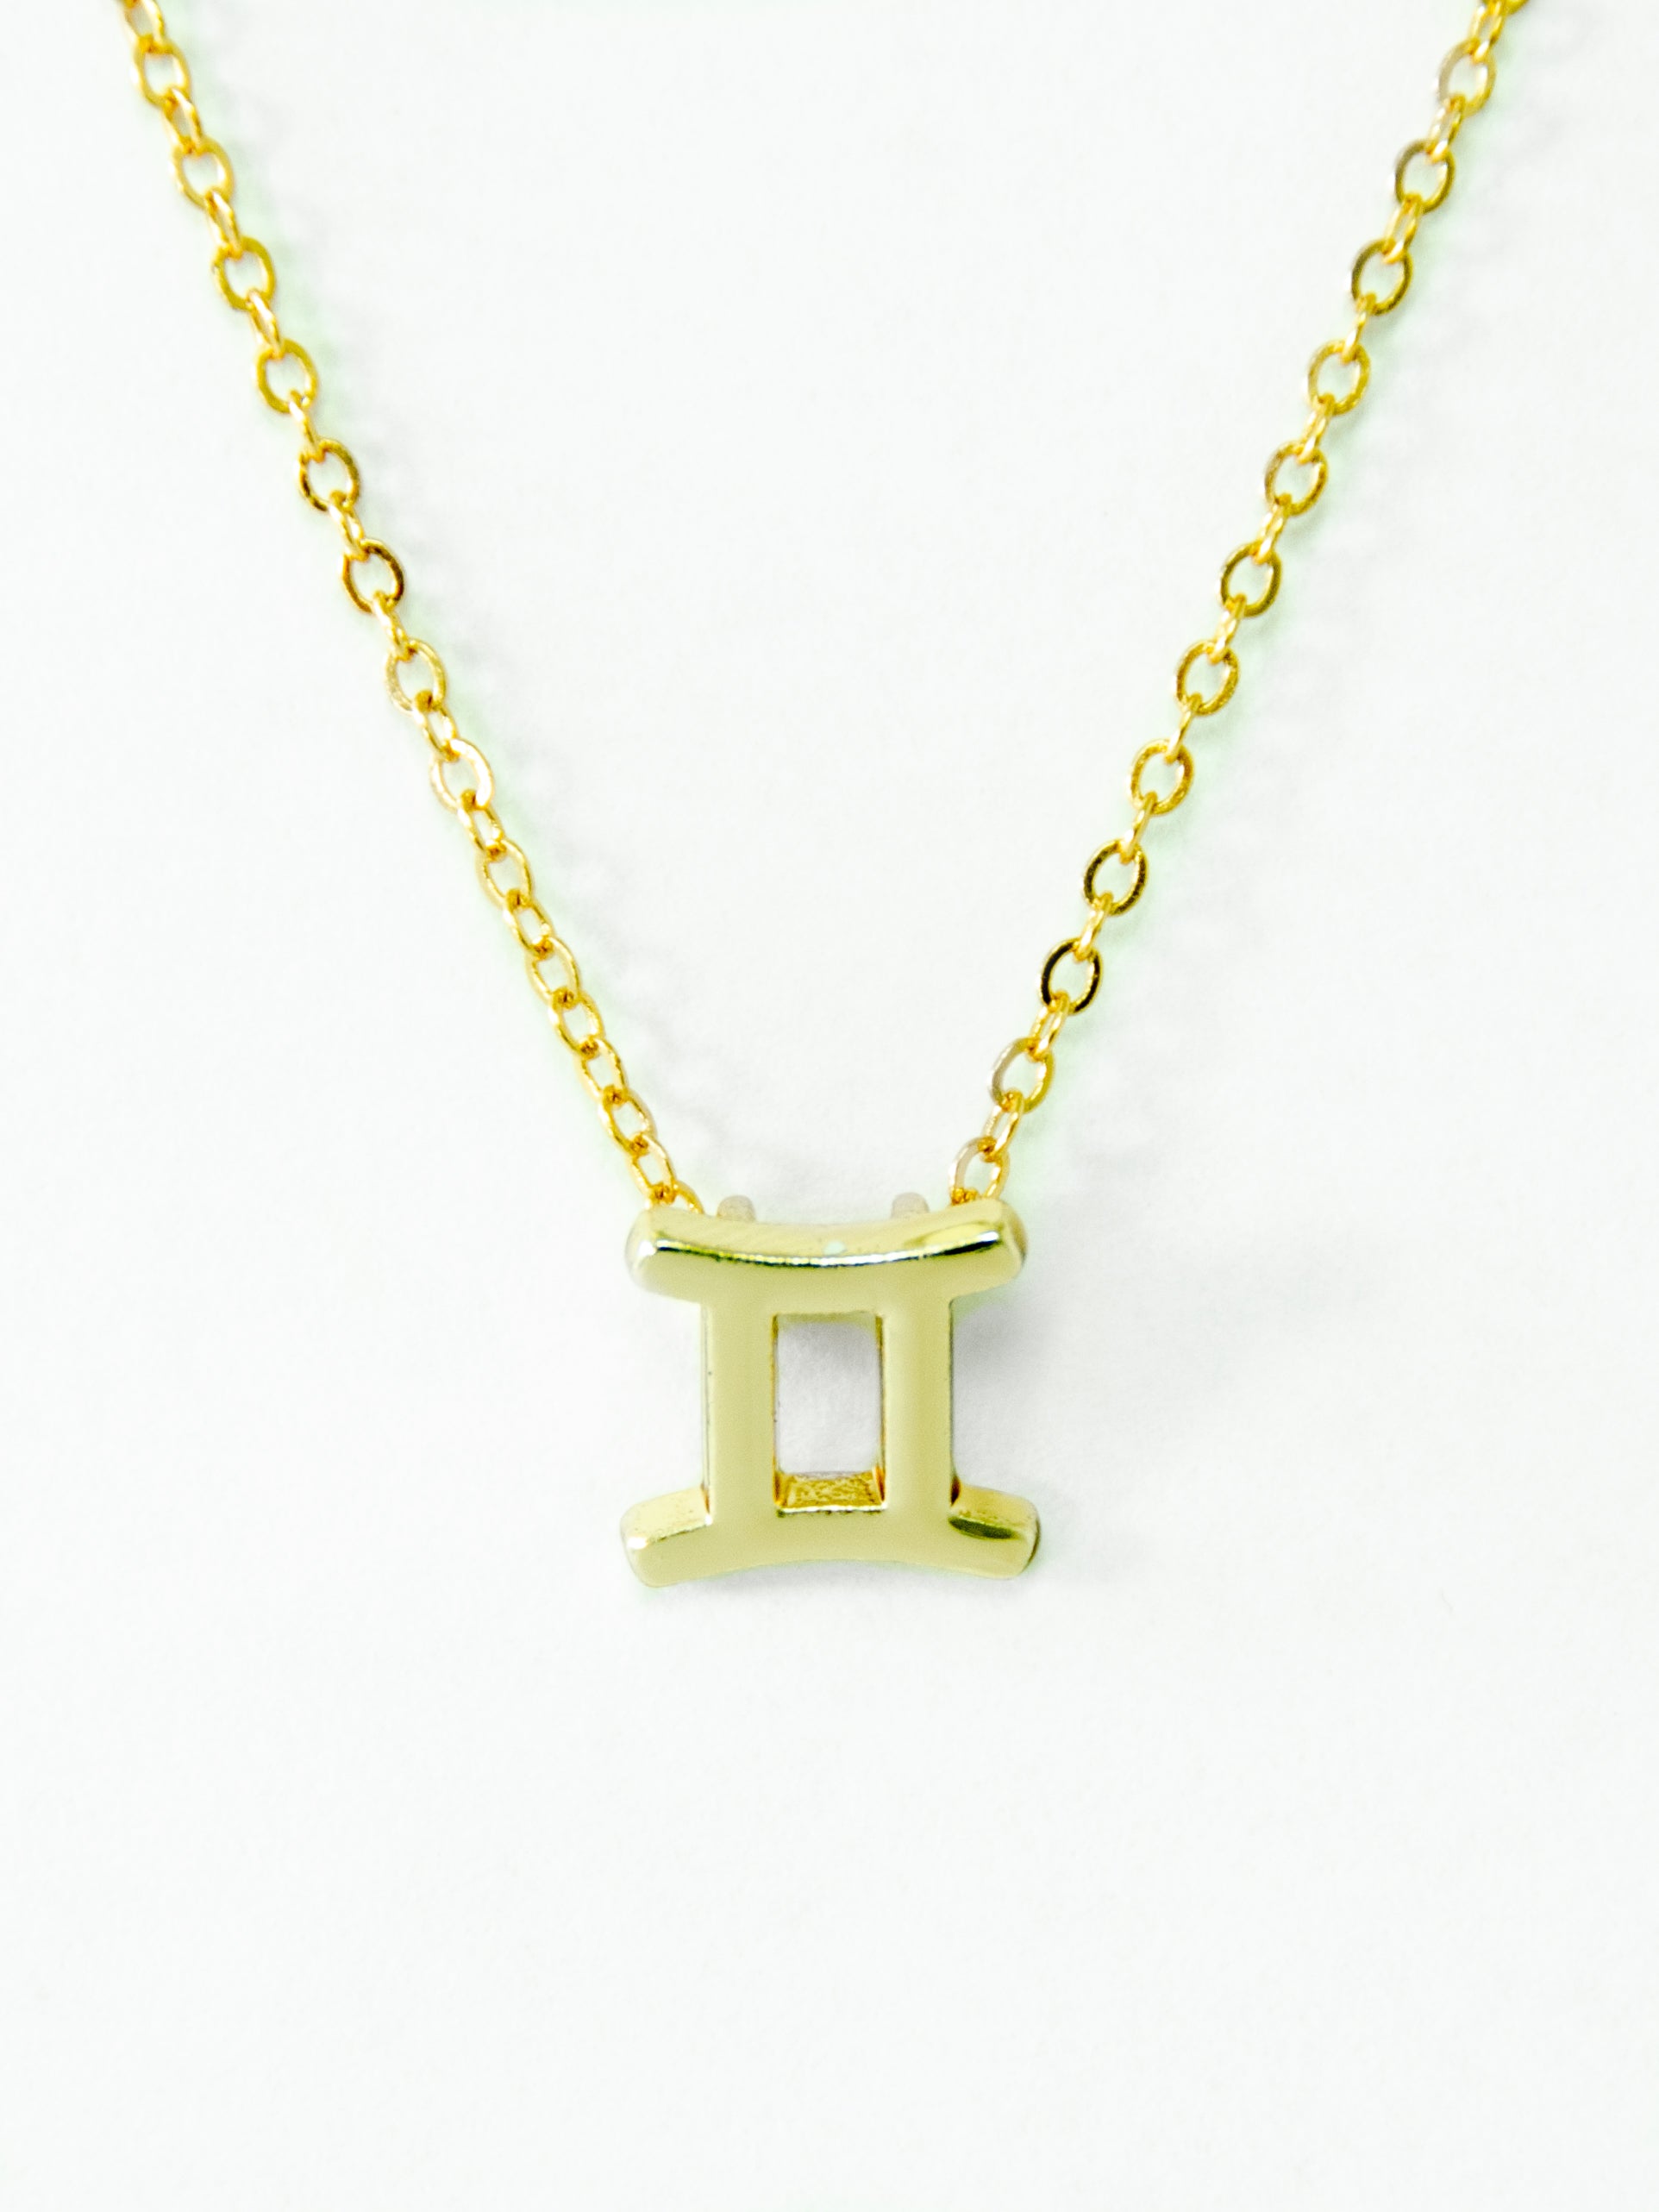 Gemini Zodiac Necklace with Stone Small - StyledU